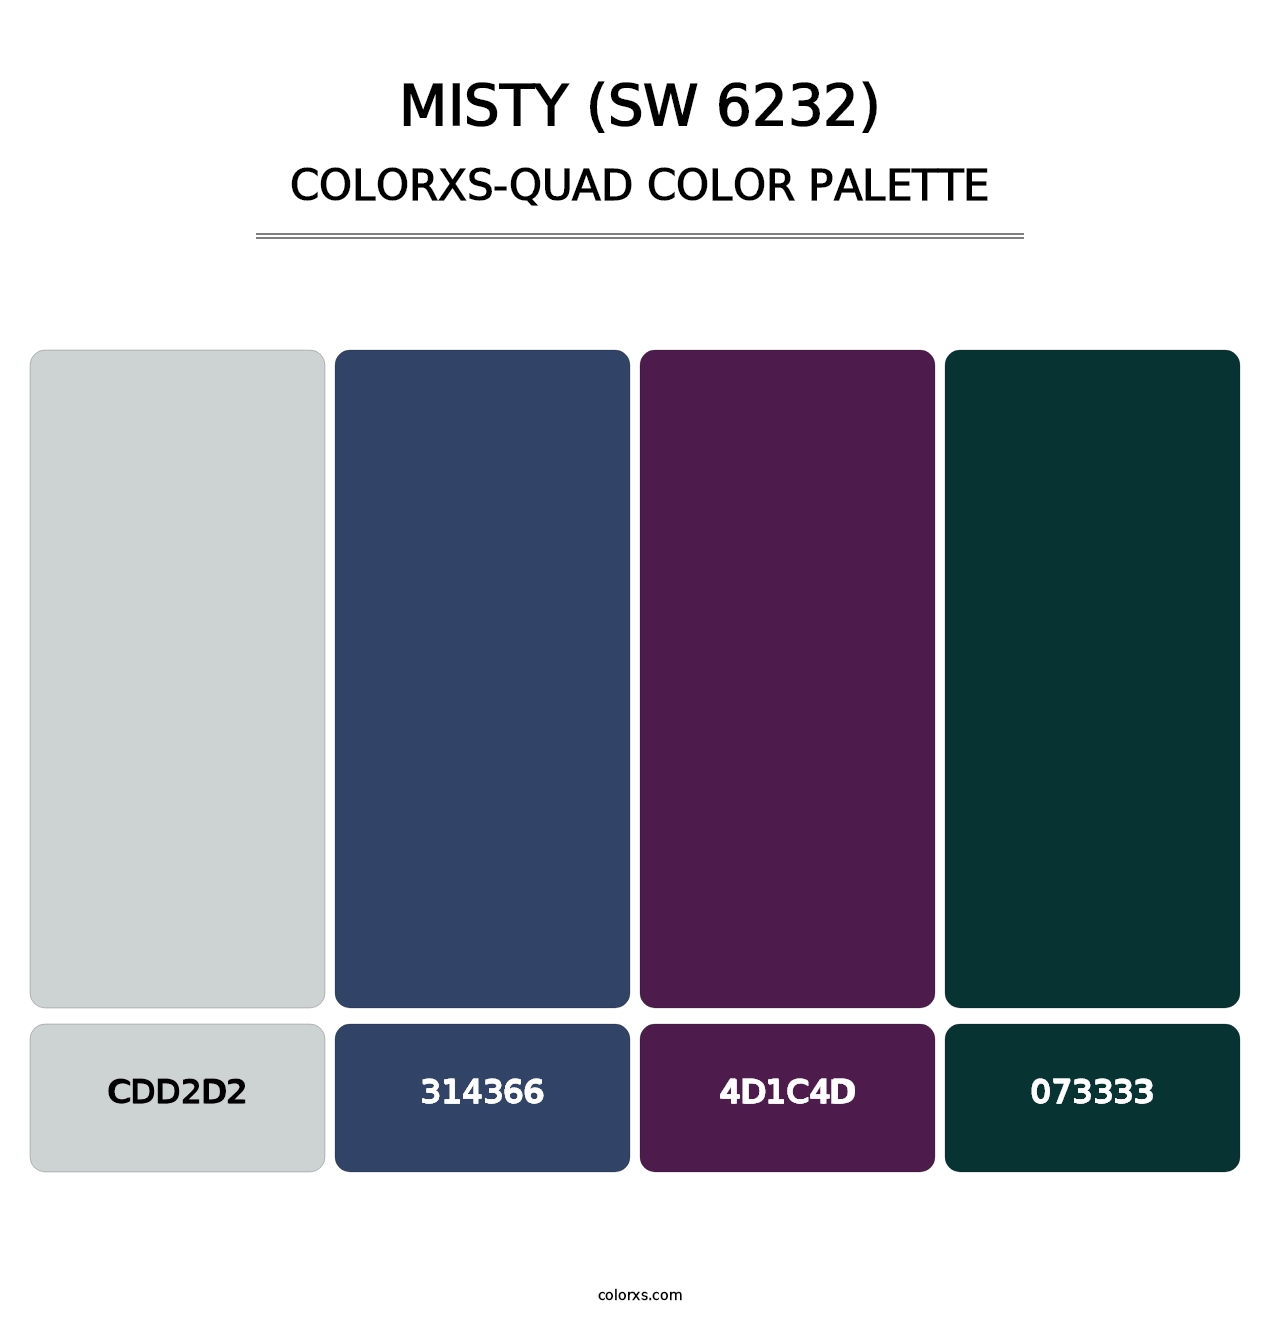 Misty (SW 6232) - Colorxs Quad Palette